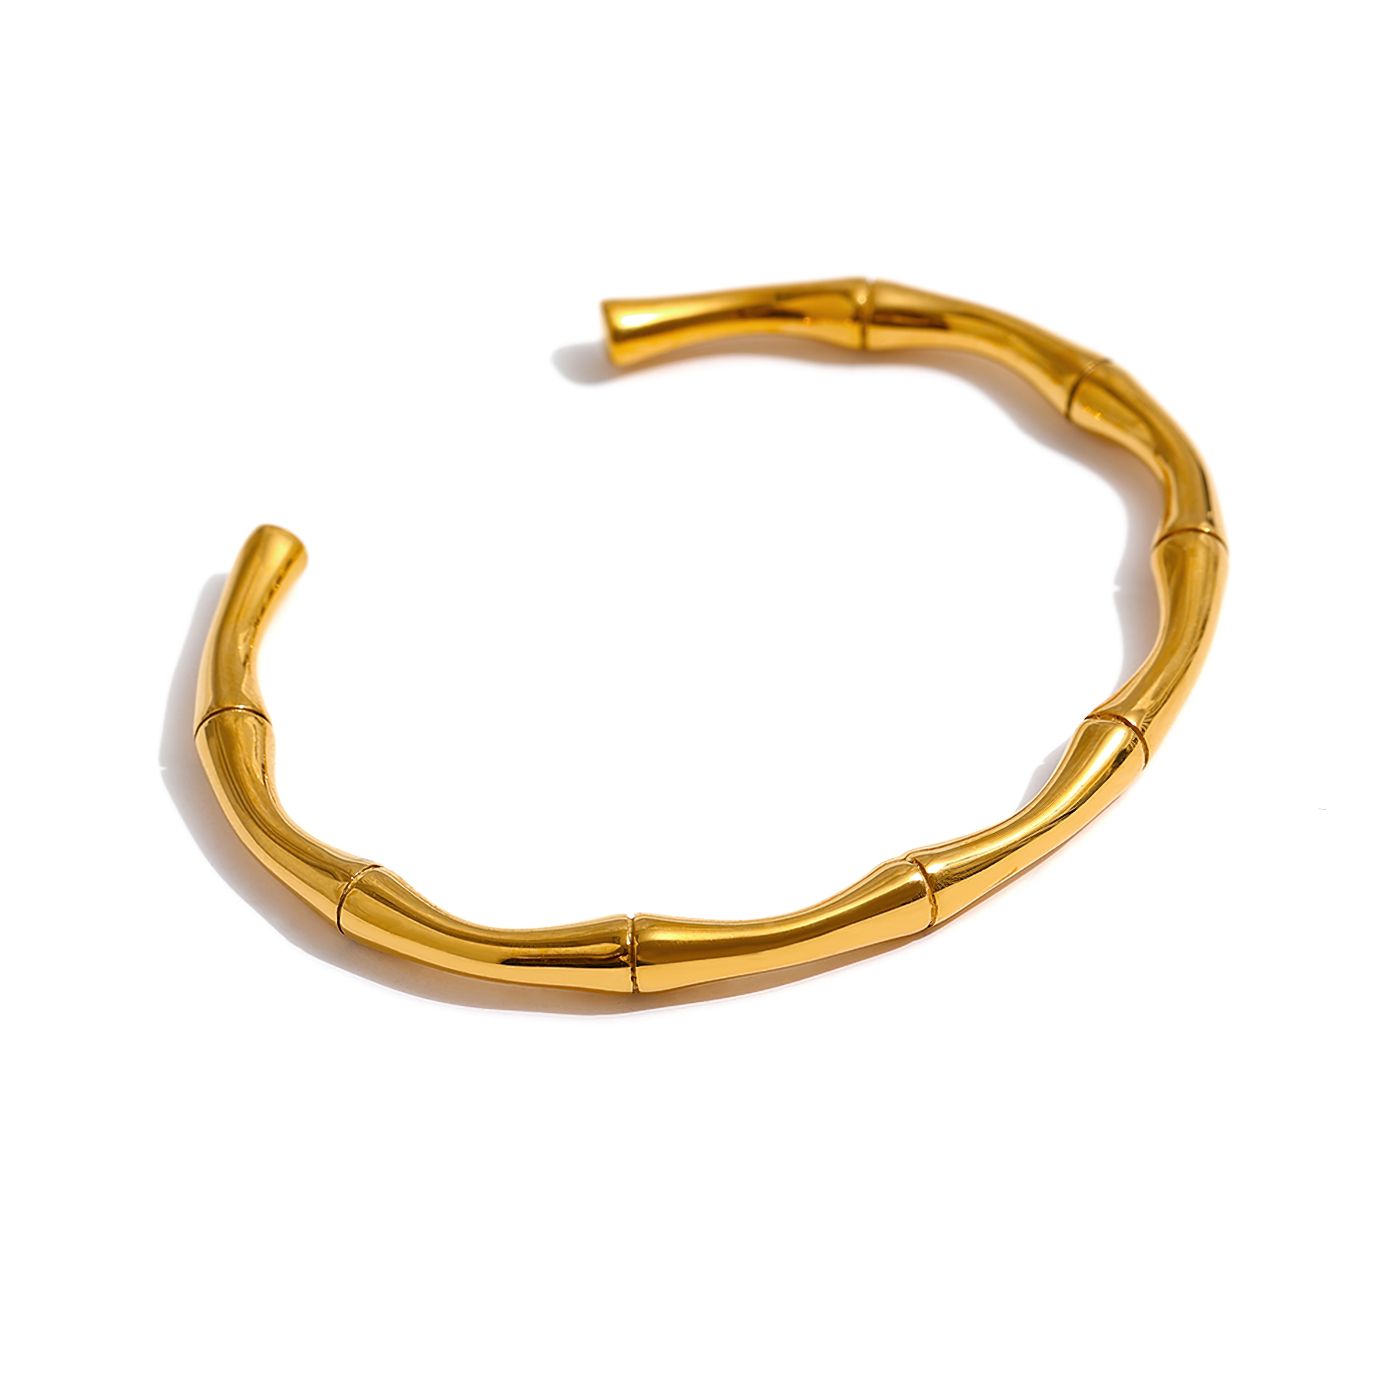 Bracelete Orgânico Cuff Irregular Banhado a Ouro 18k - Aspekto 1